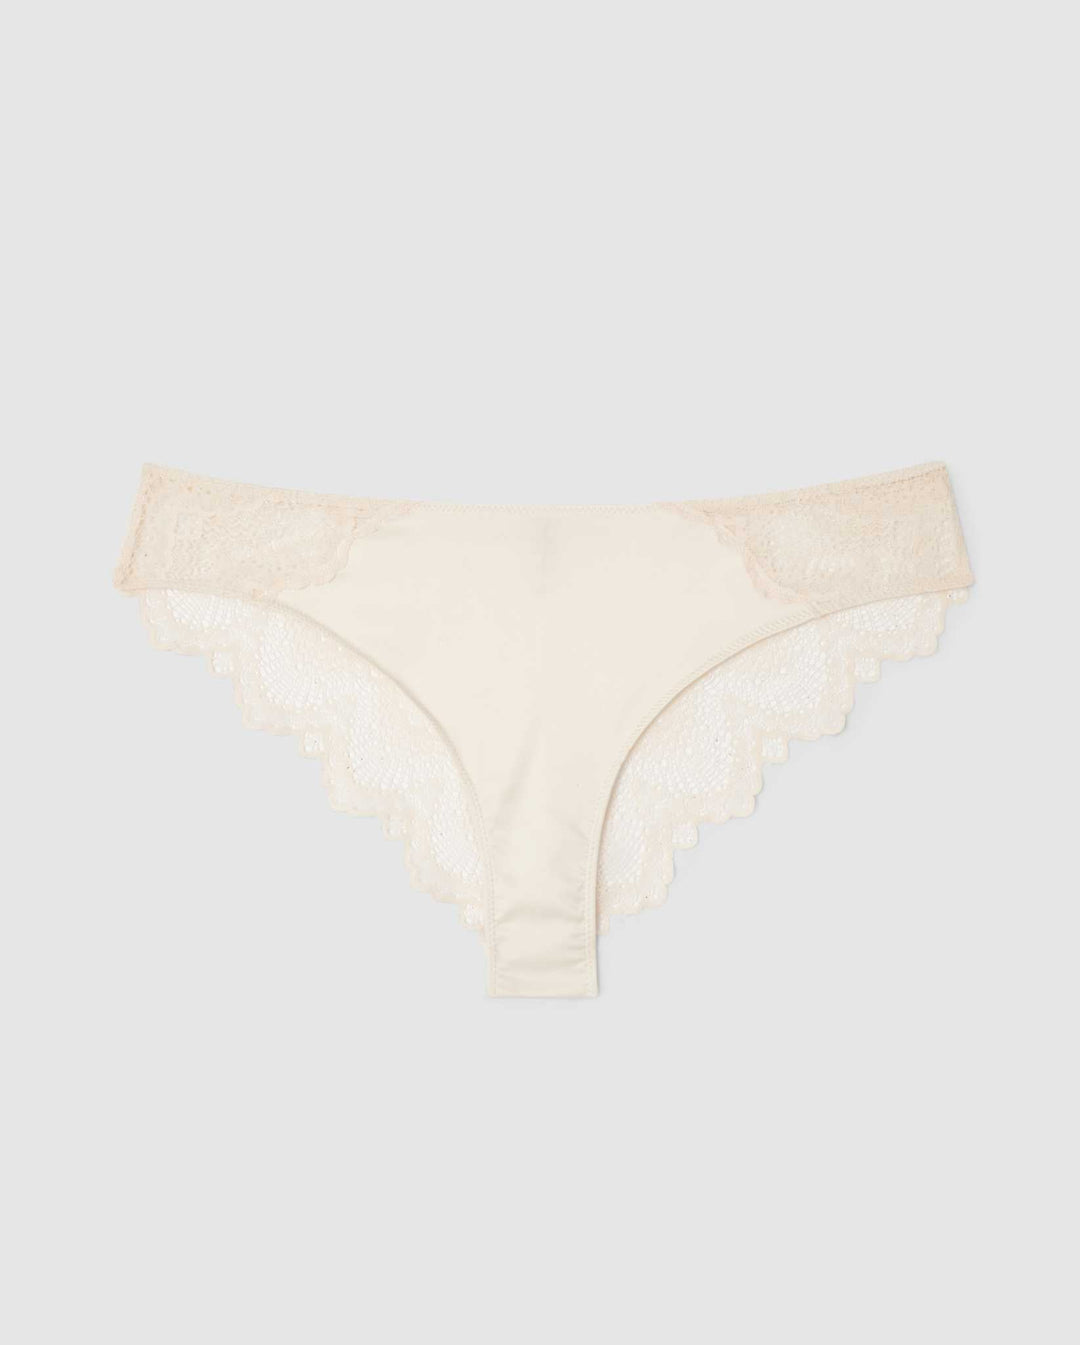 Lace Underwear Australia, Shop 75 items